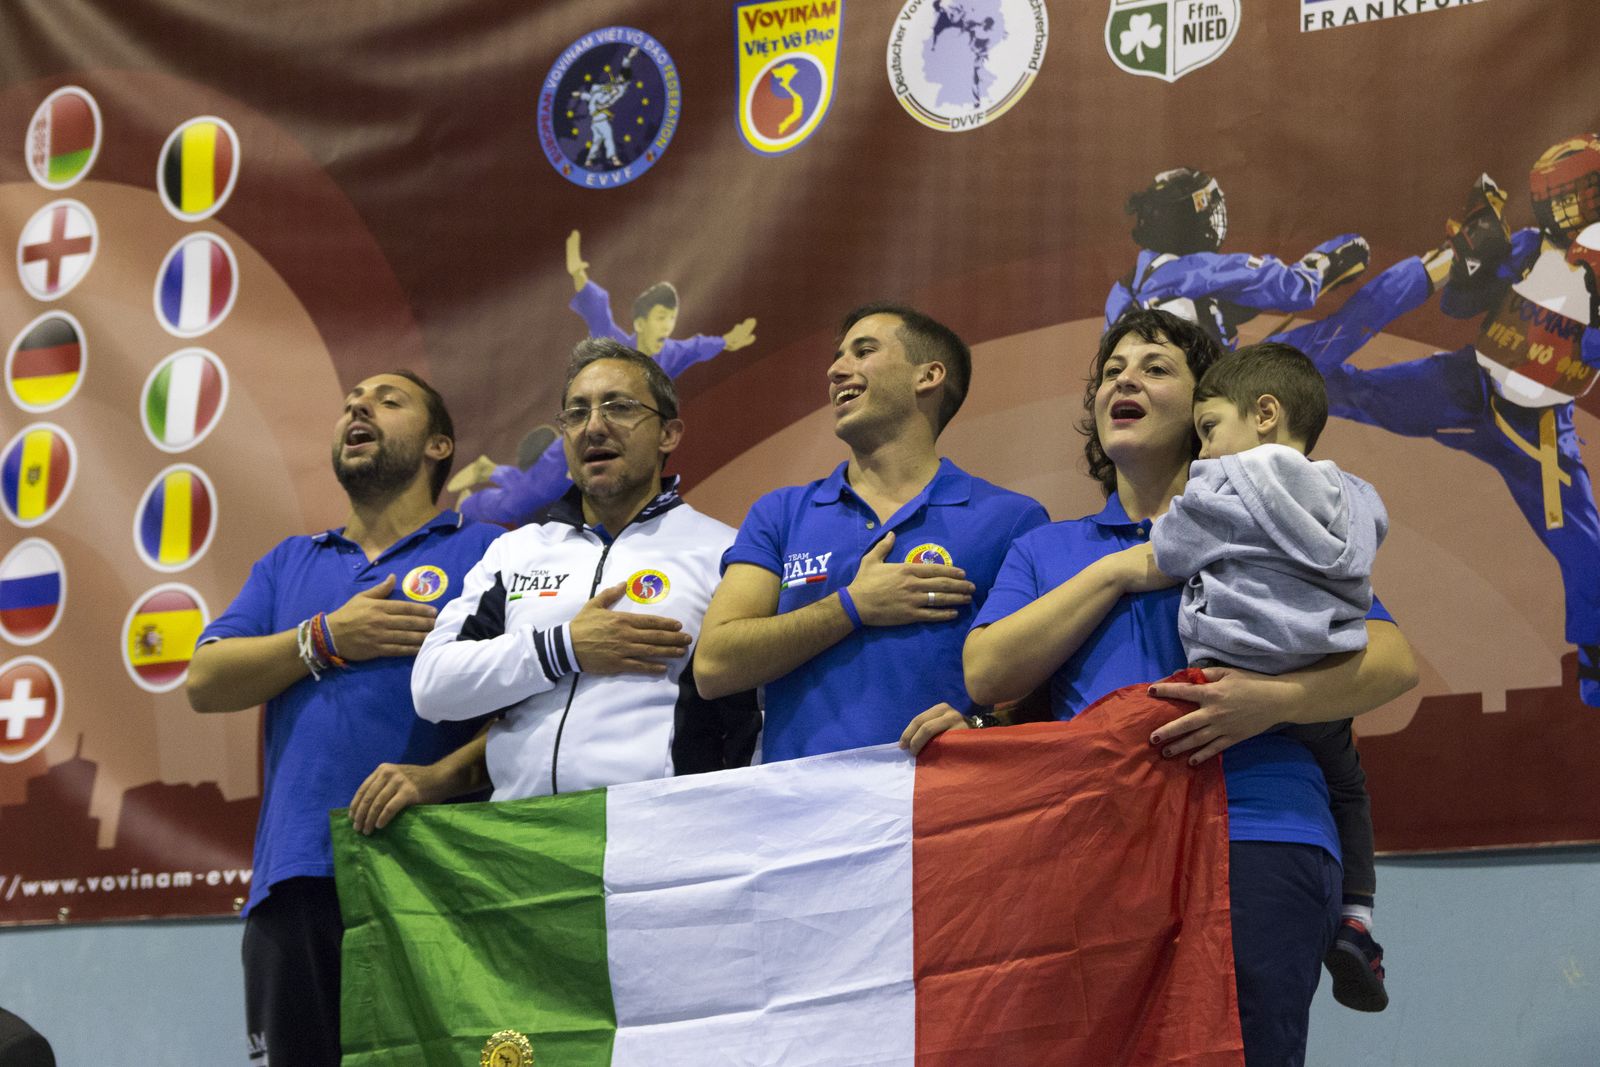 Team Italy Junior 2019